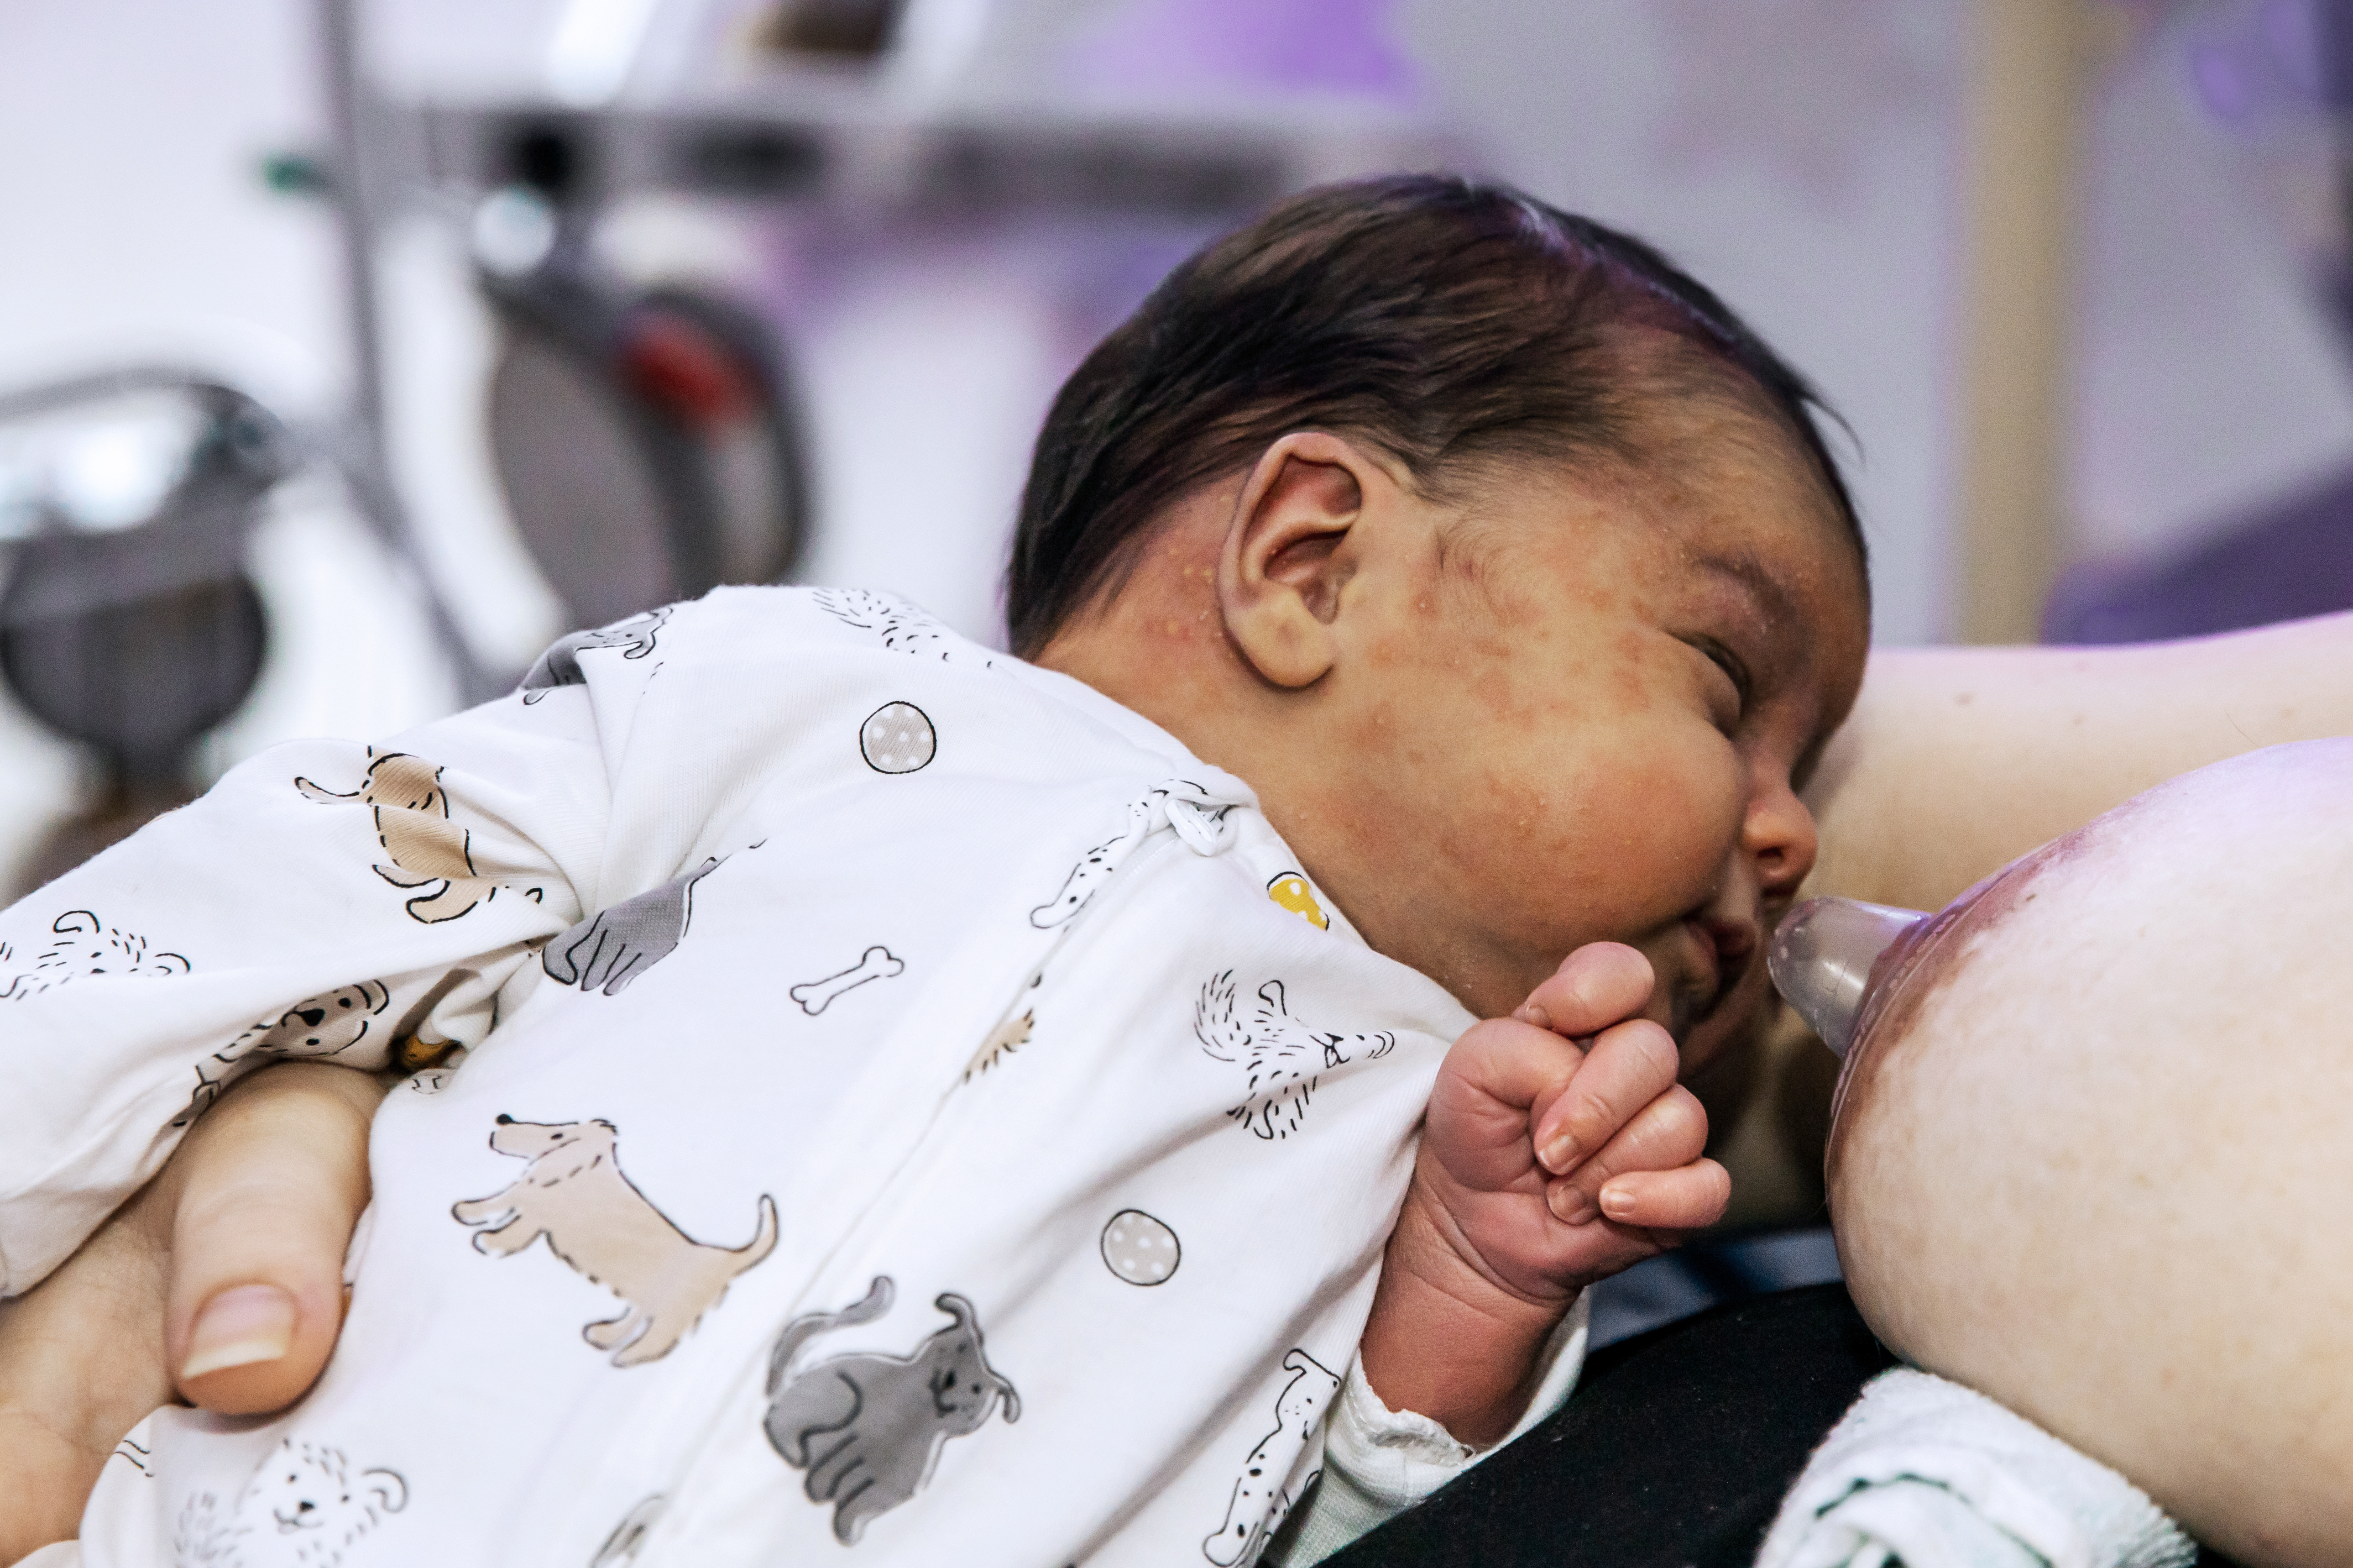 Bebis som ligger bredvid ett bröst med amningsnapp.